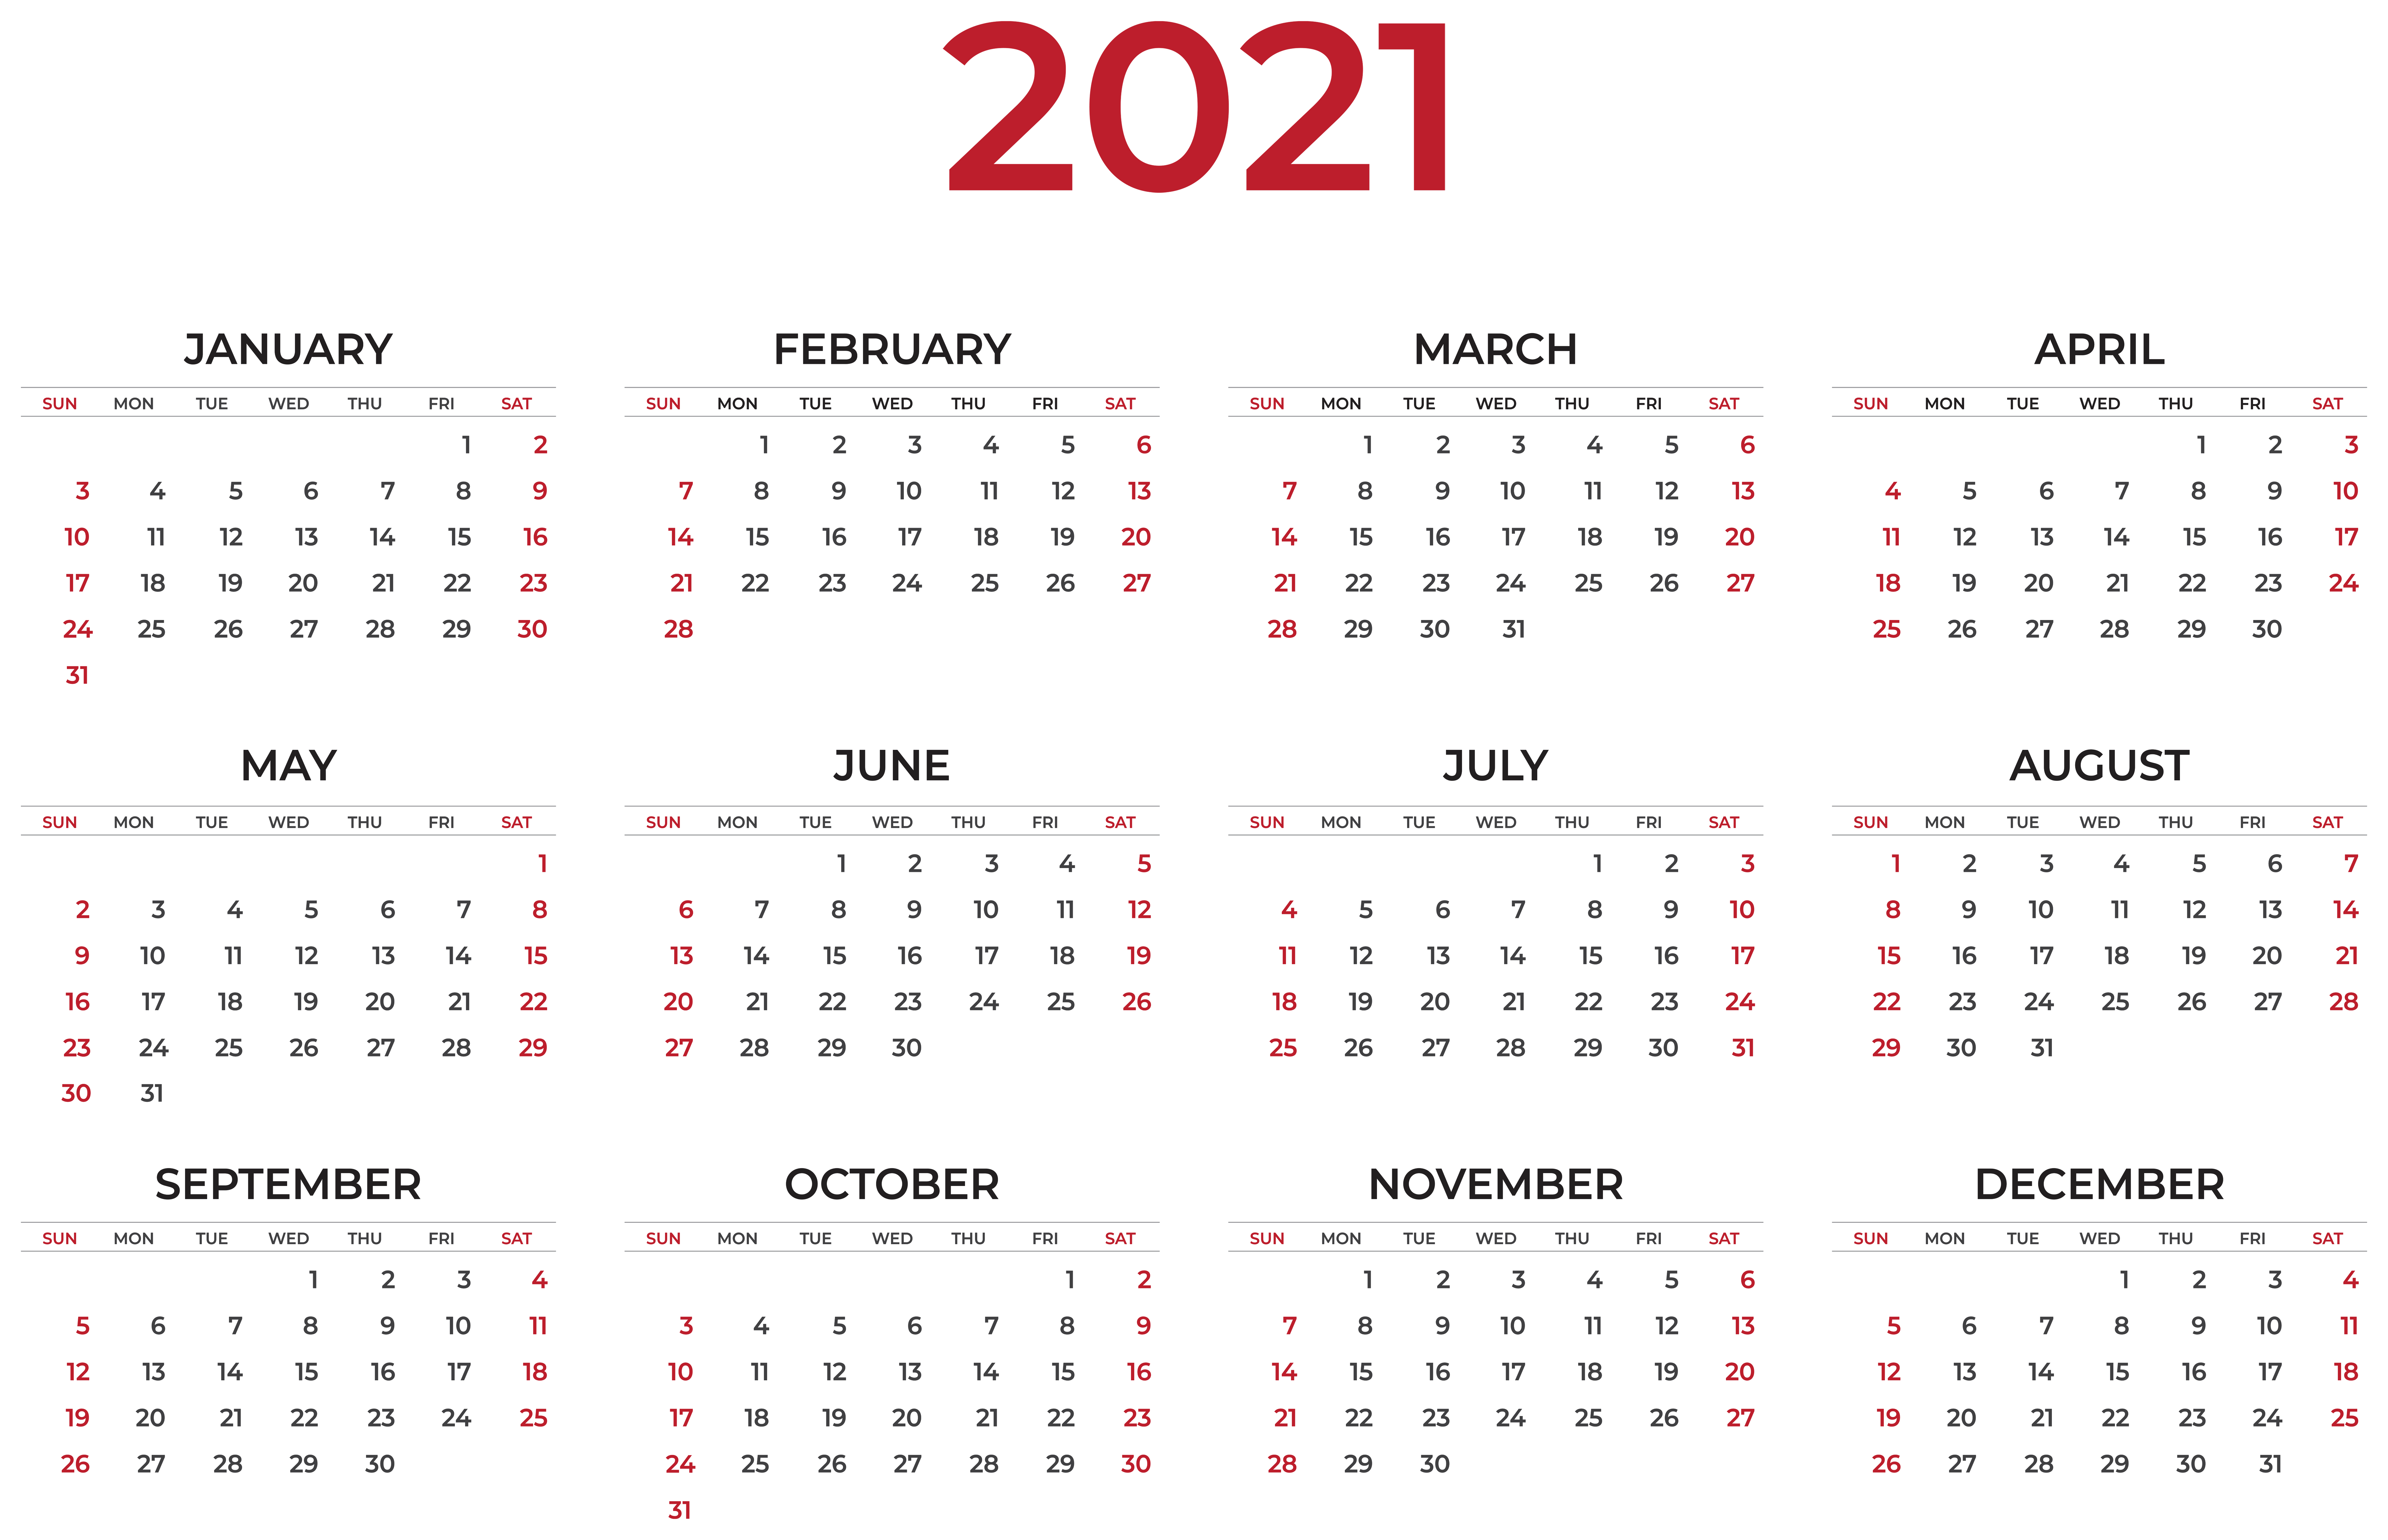 2021 Calendar Wallpapers.